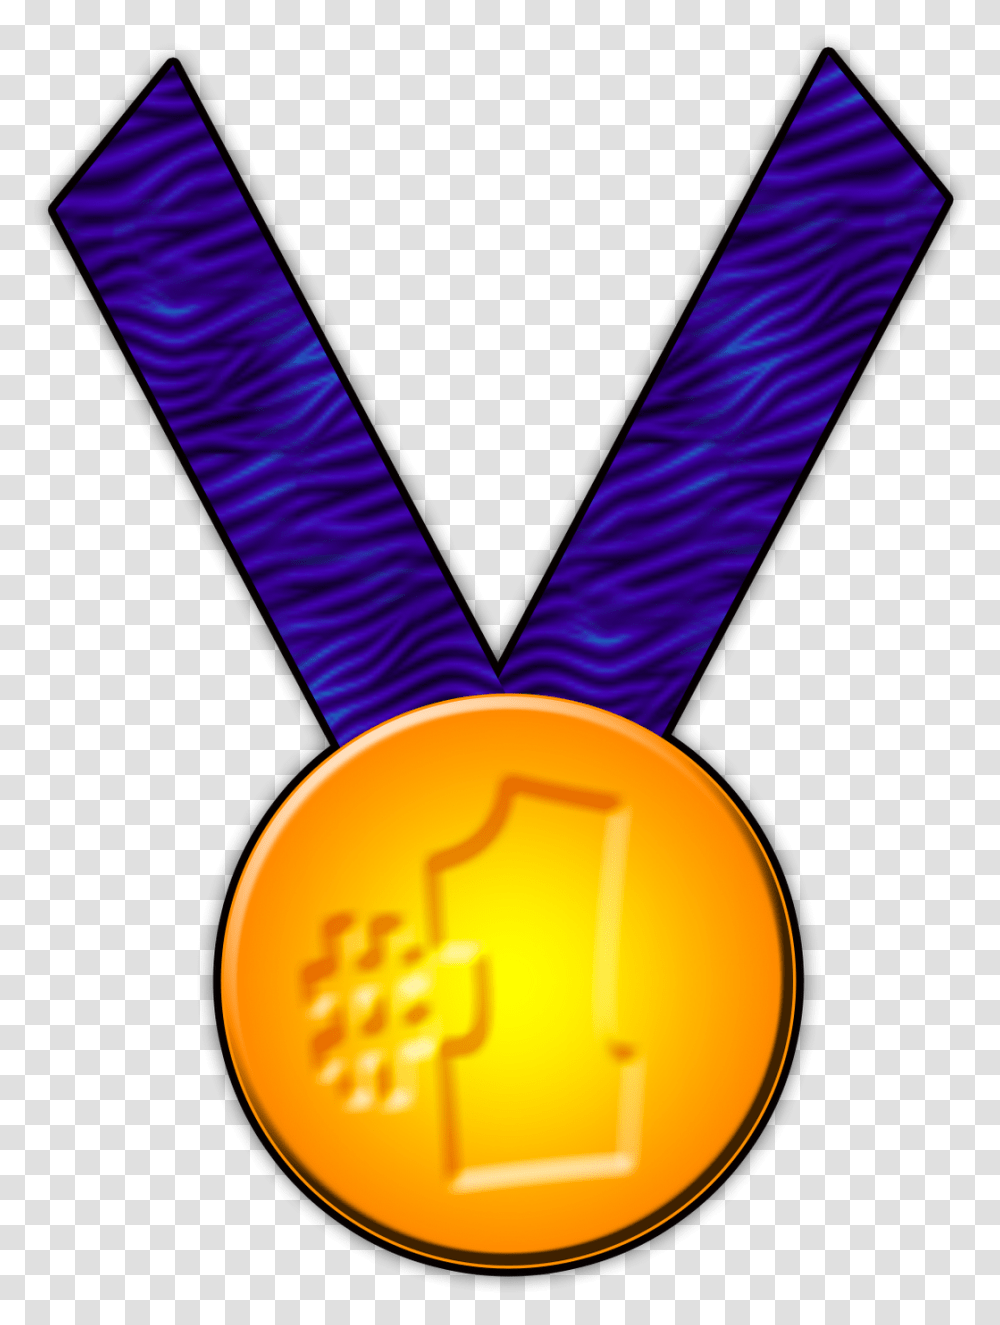 Gold Medal Gymnast Clipart, Trophy Transparent Png